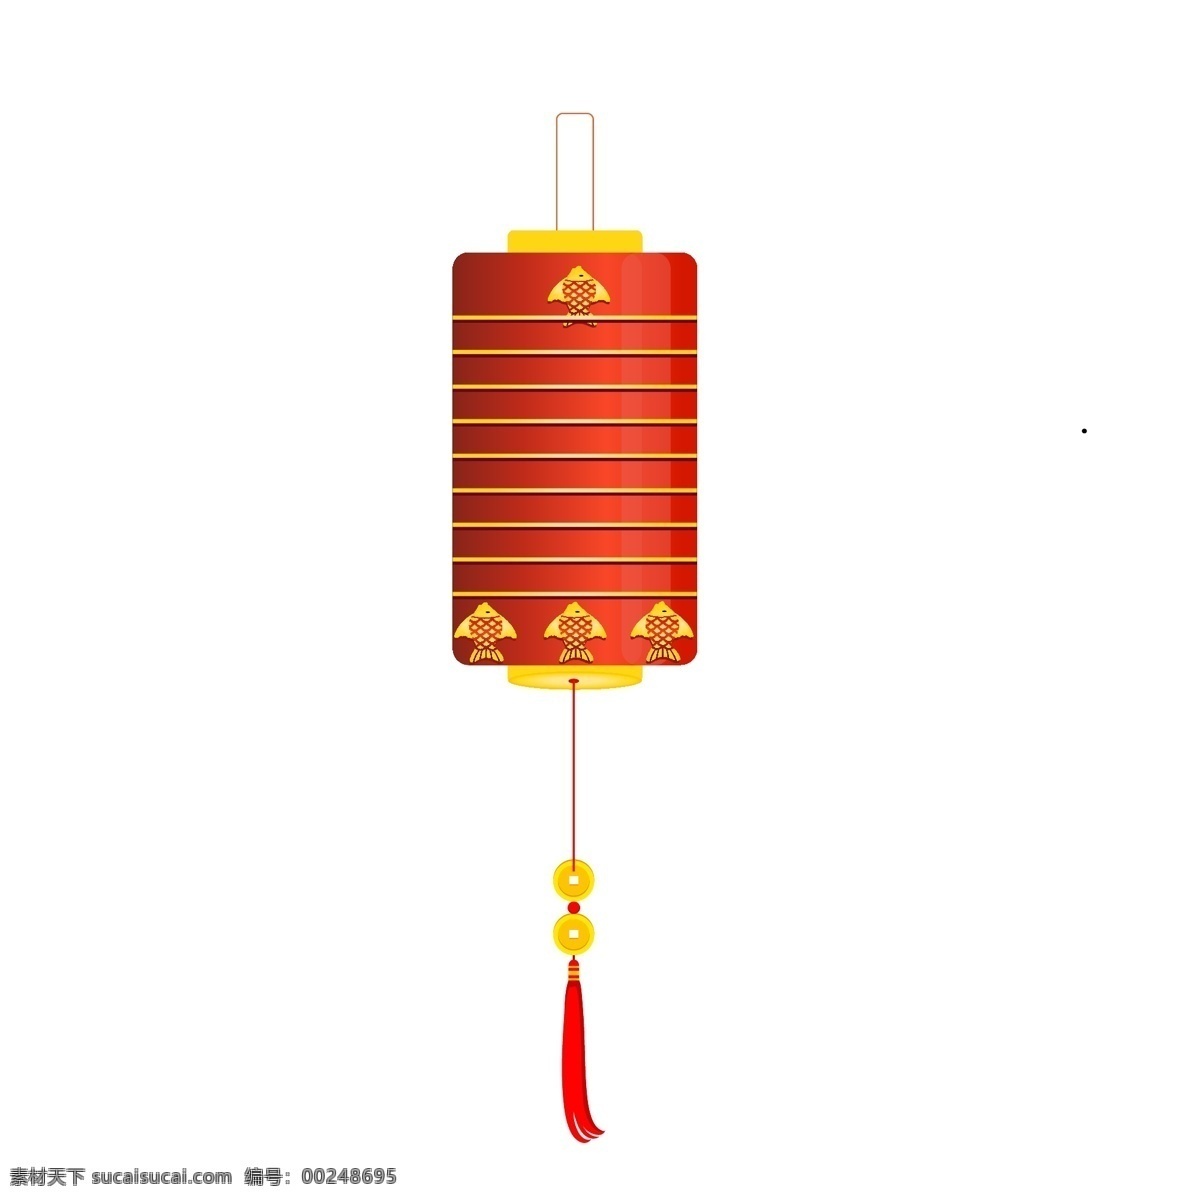 新年 红色 灯笼 插画 红色的灯笼 手绘灯笼 卡通灯笼 灯笼插画 新年小物插画 漂亮的灯笼 黄色的挂饰